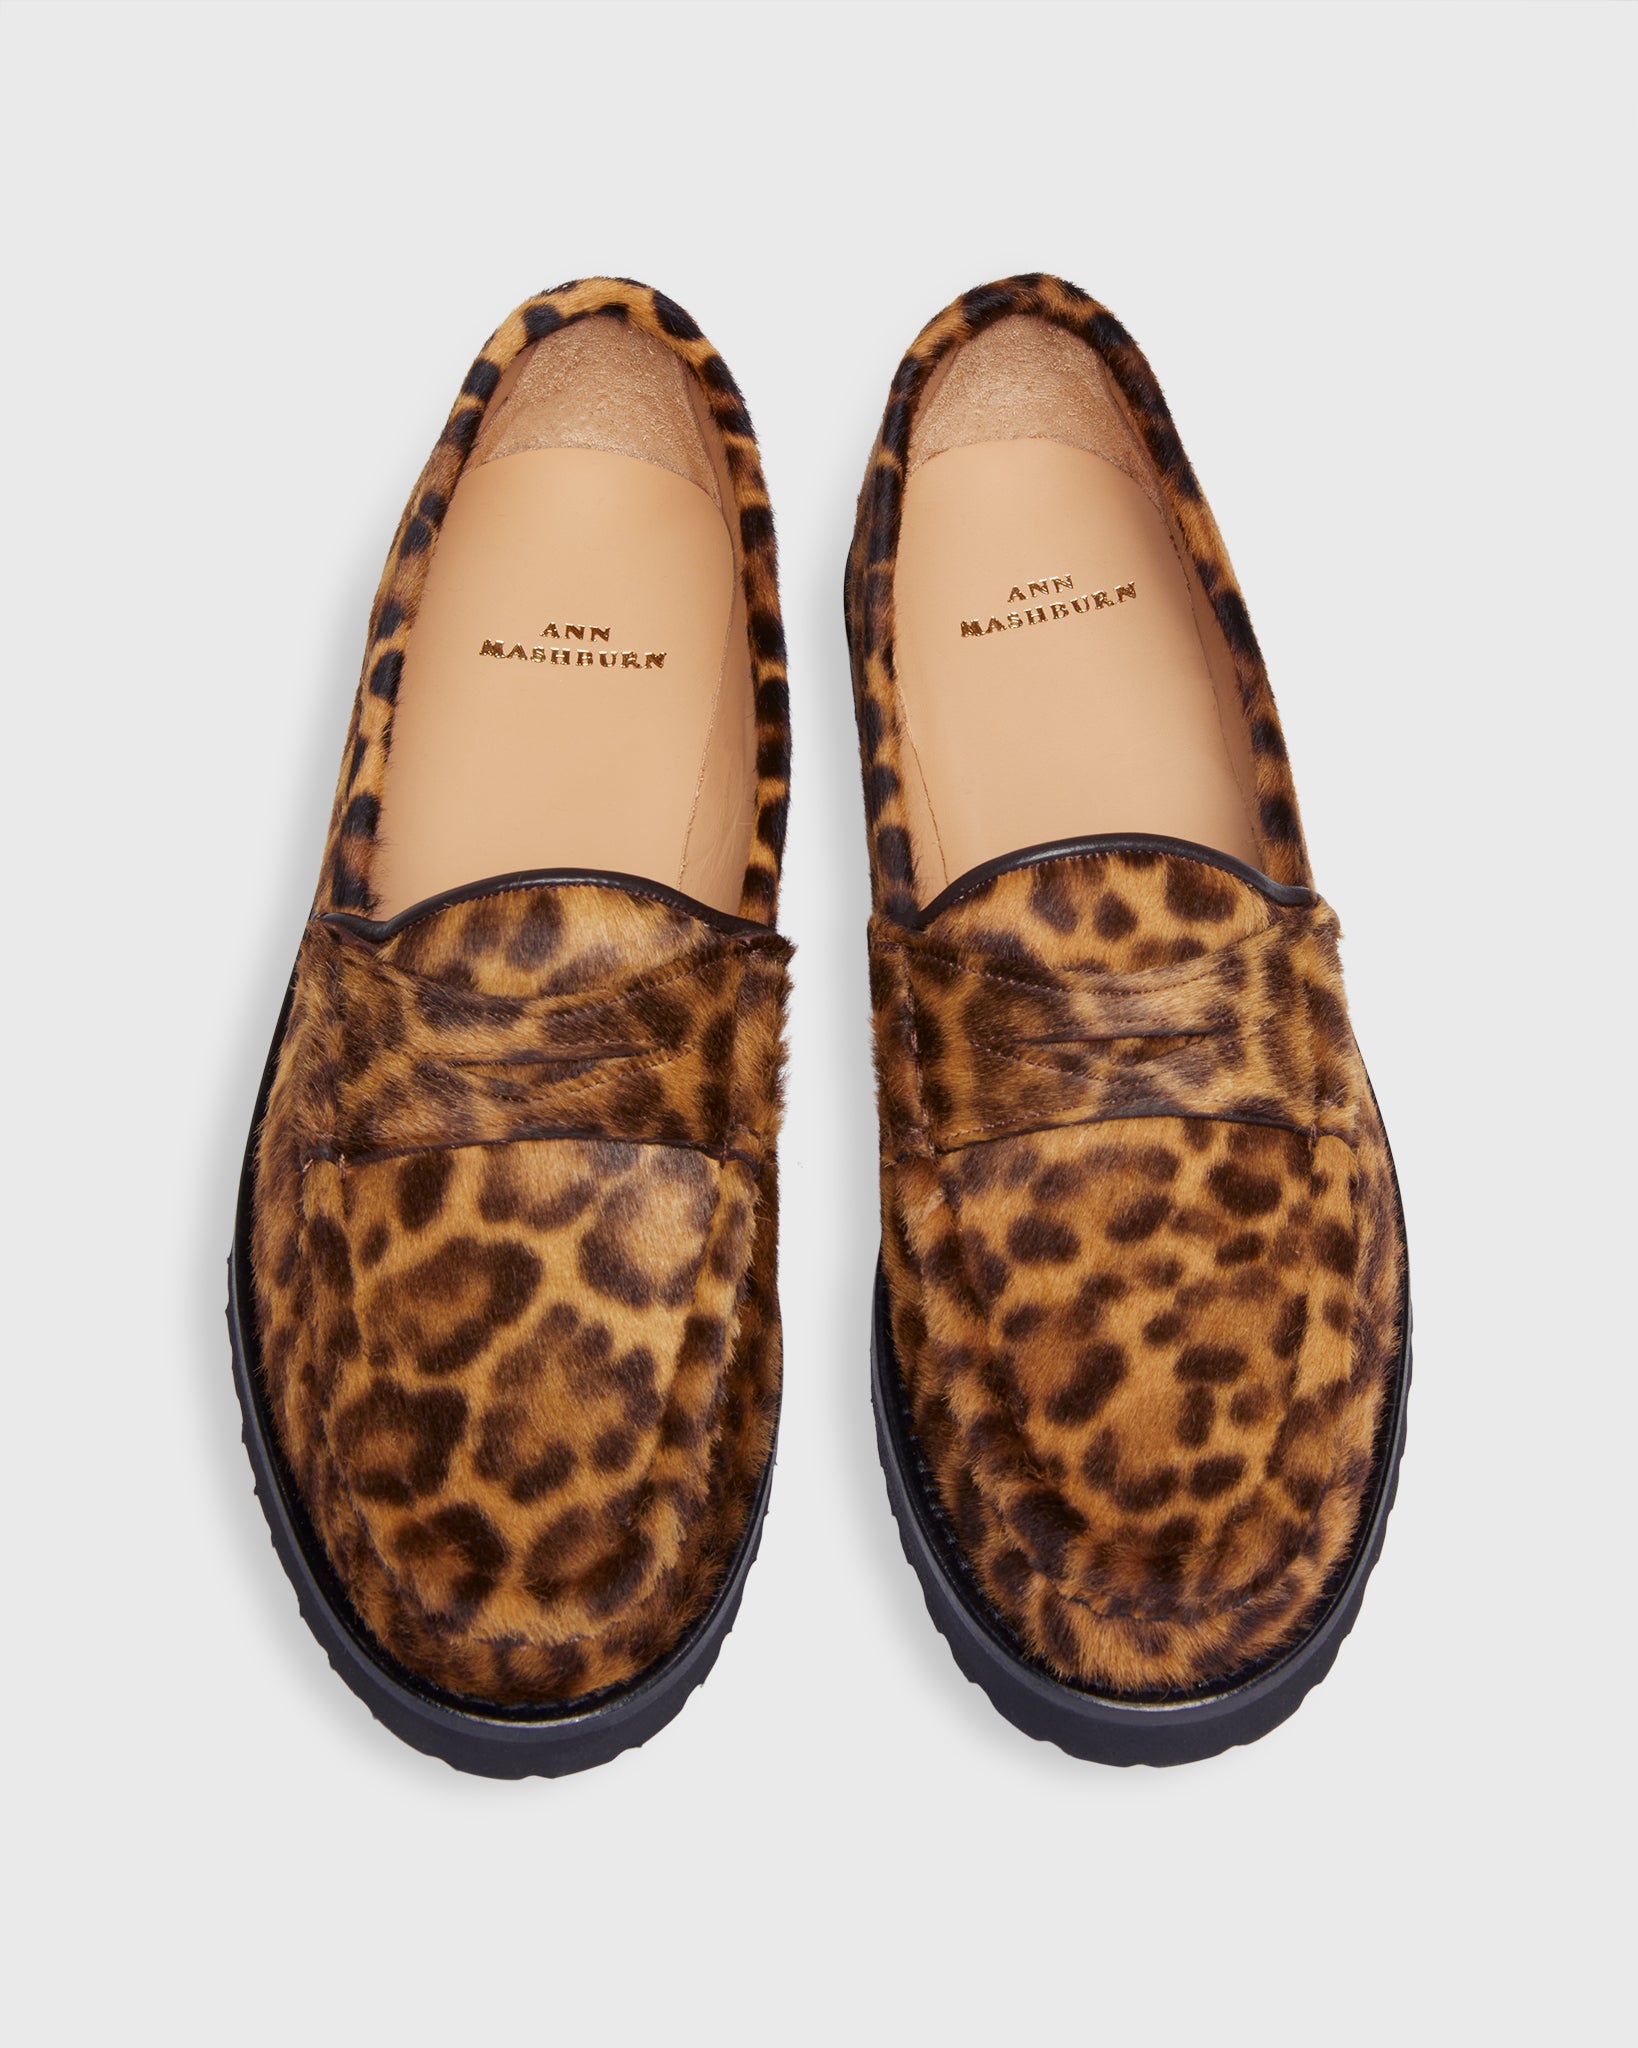 Lug Sole Loafer in Savannah Leopard Calf Hair